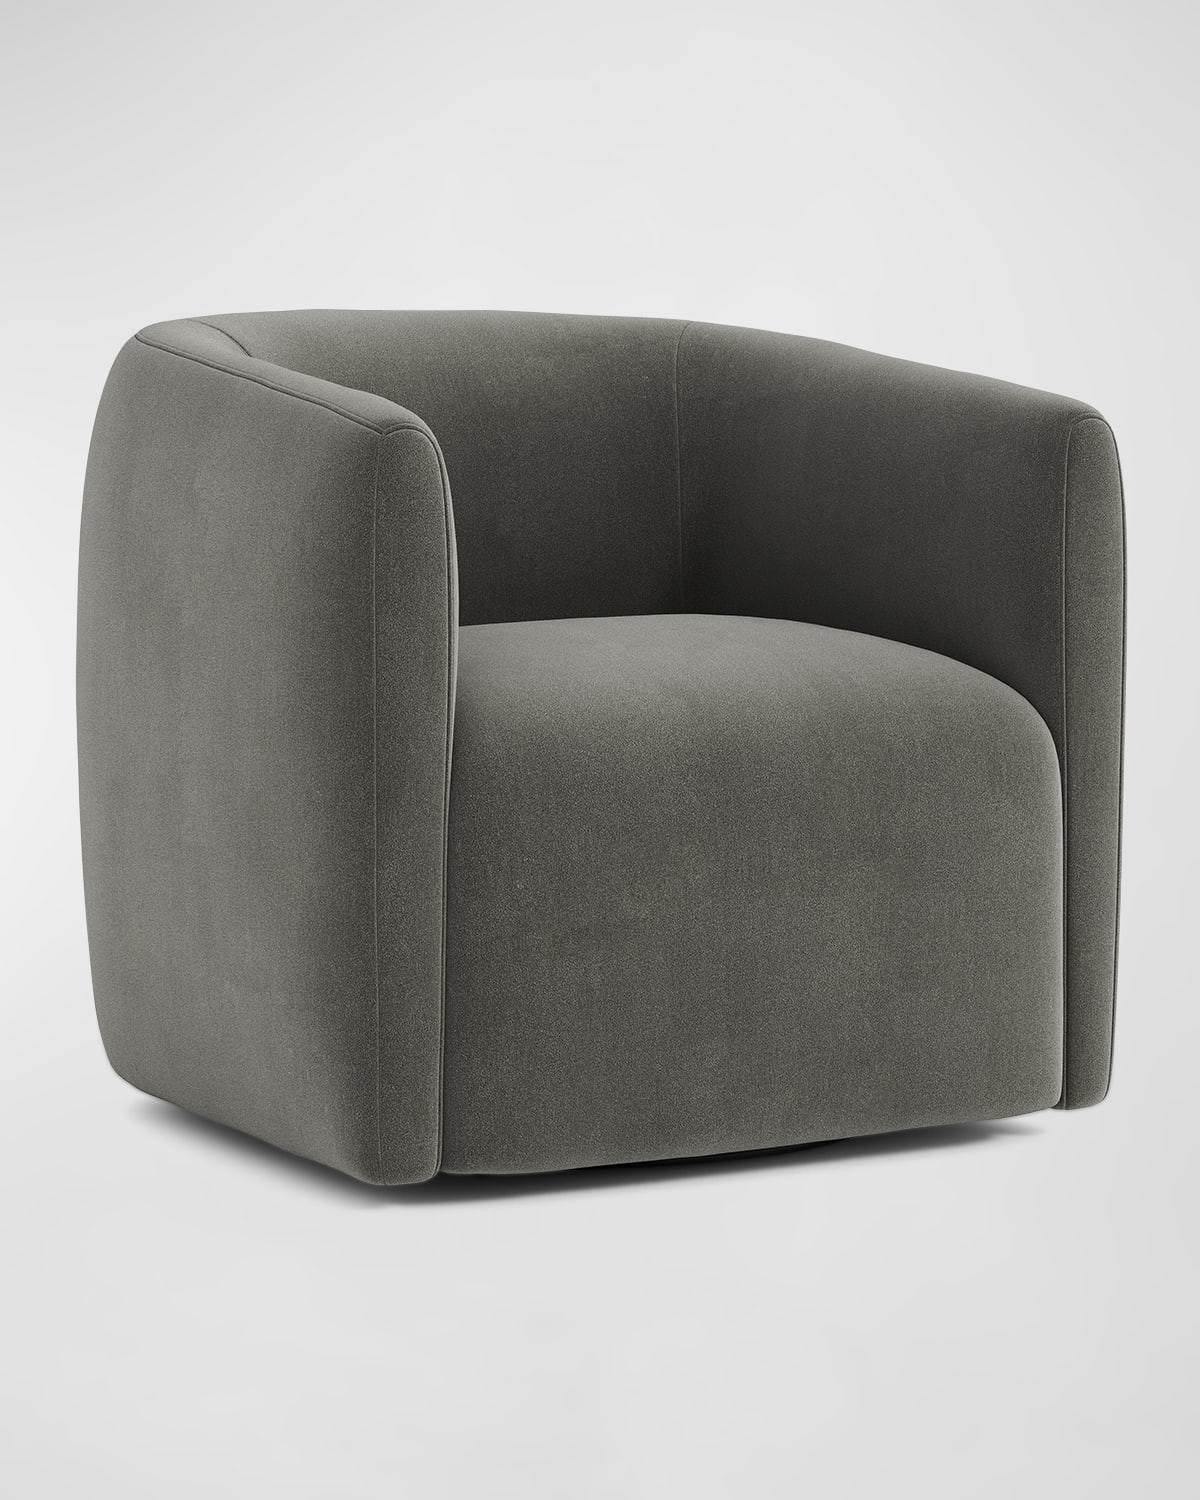 Bernhardt Aline Swivel Chair In Truffle Grey